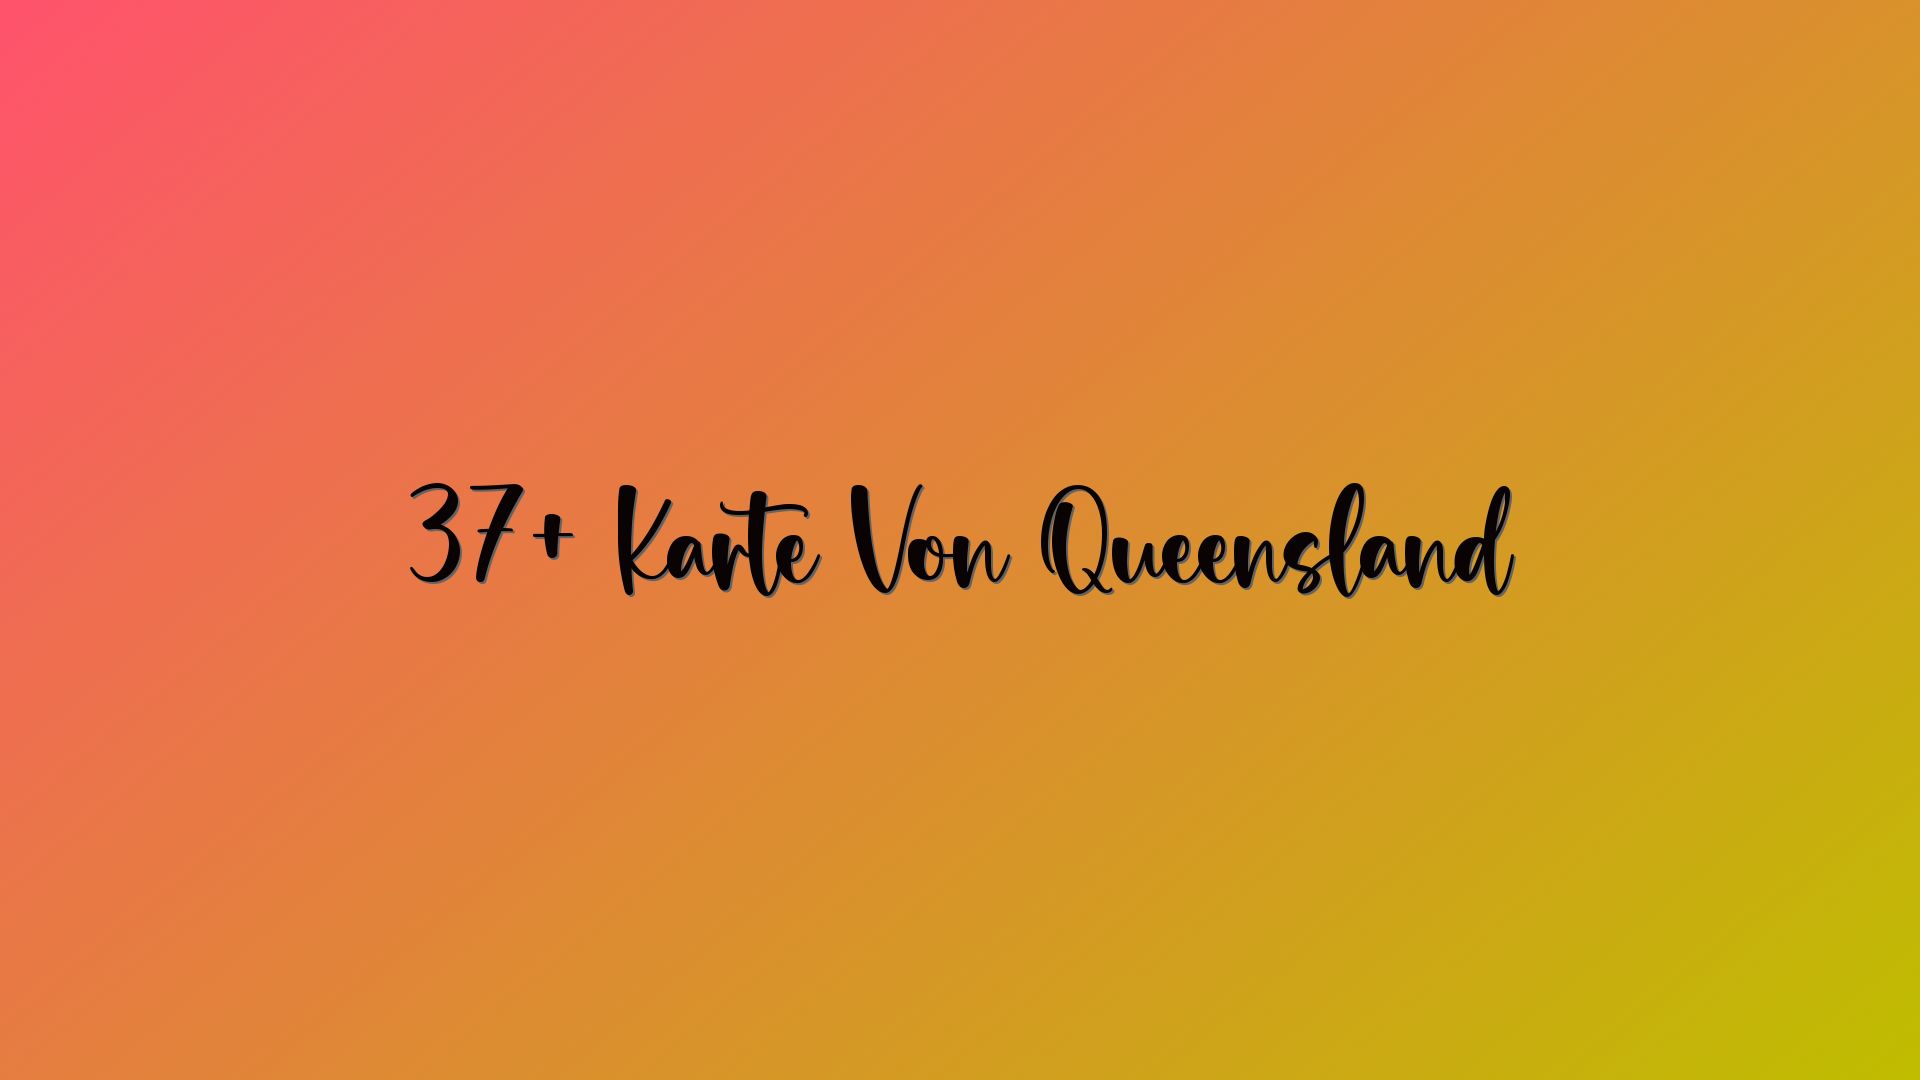 37+ Karte Von Queensland